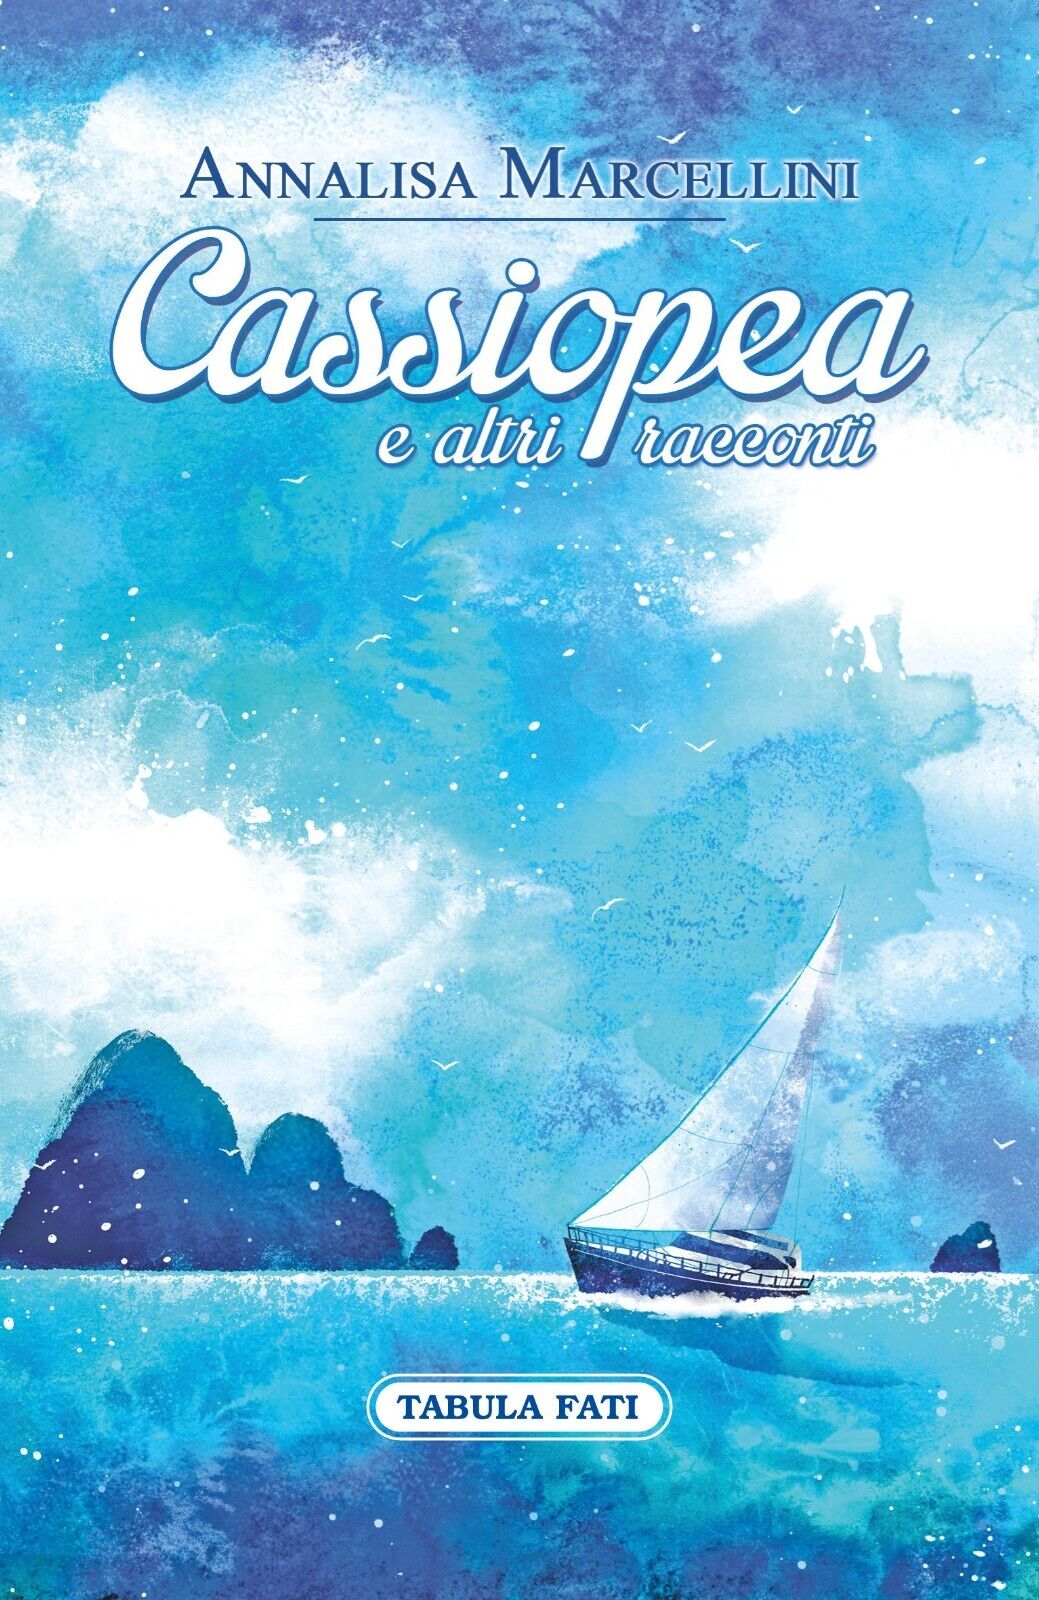 Cassiopea e altri racconti di Annalisa Marcellini, 2015, Tabula Fati